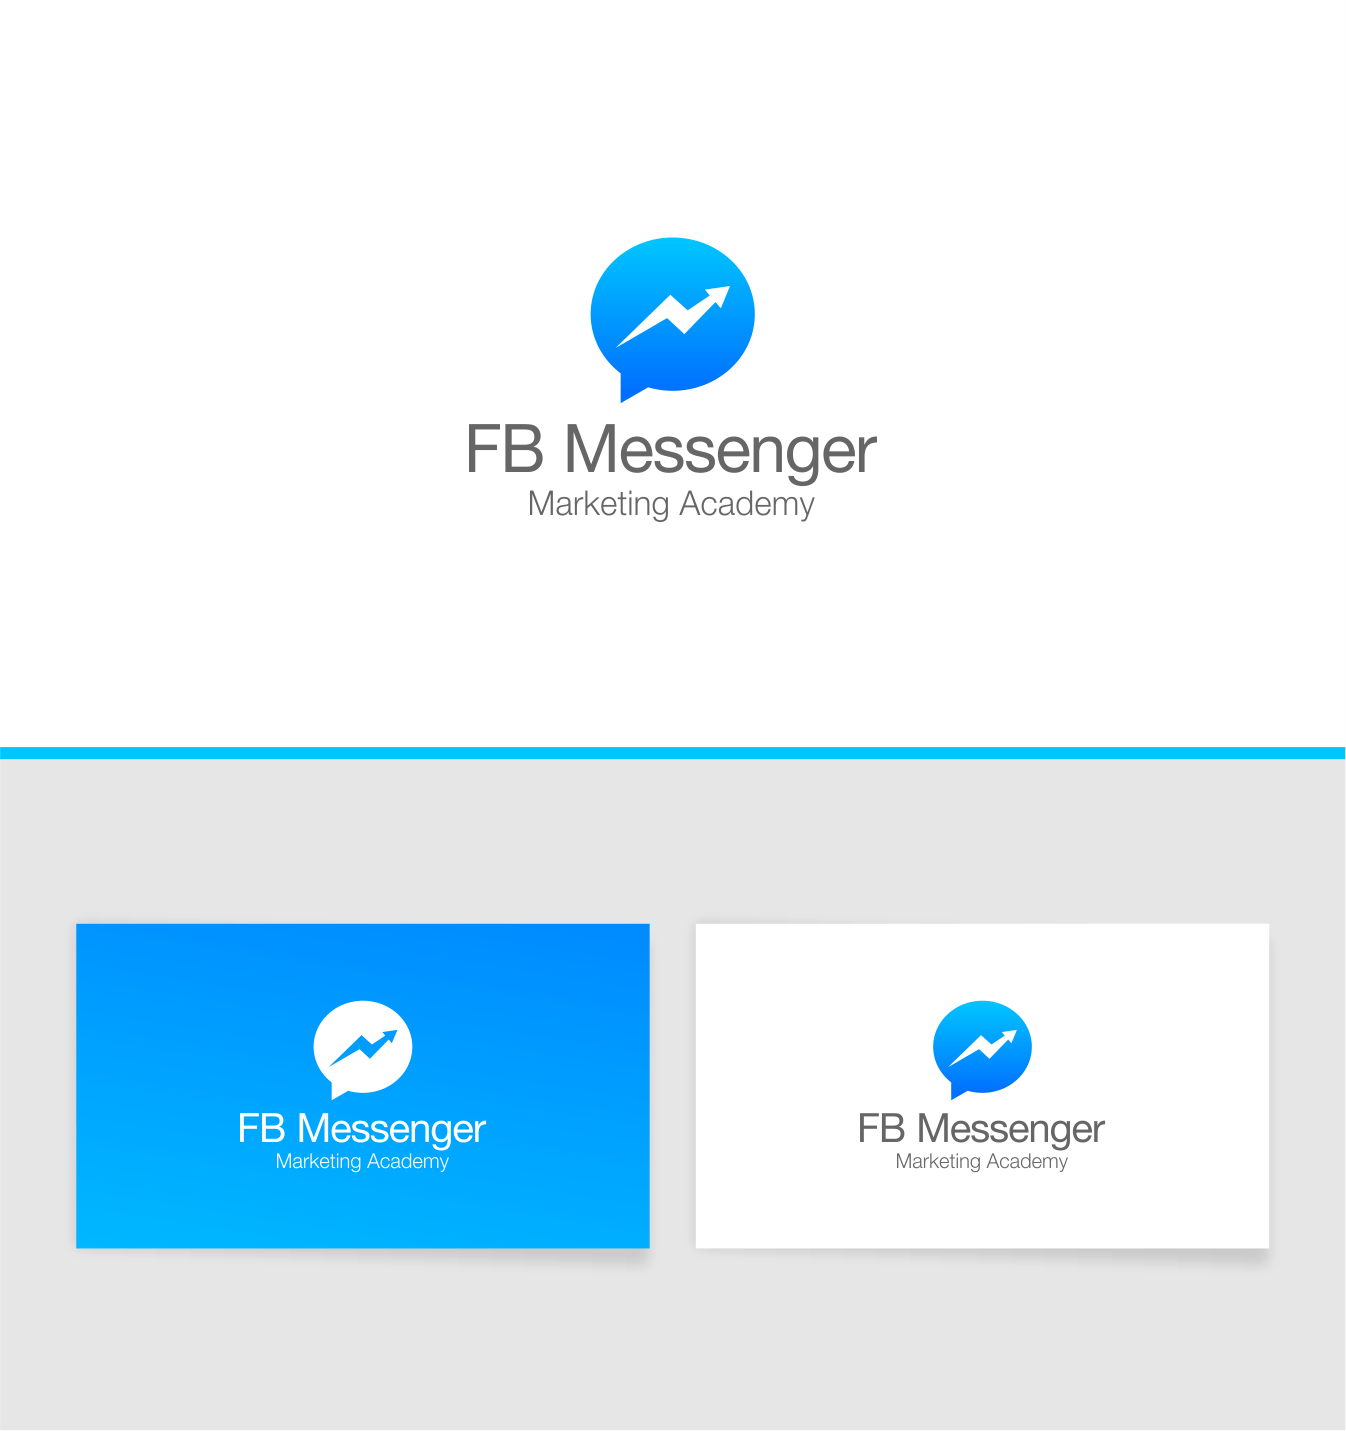 FB Messenger Logo - Serious, Professional, Marketing Logo Design for FB Messenger